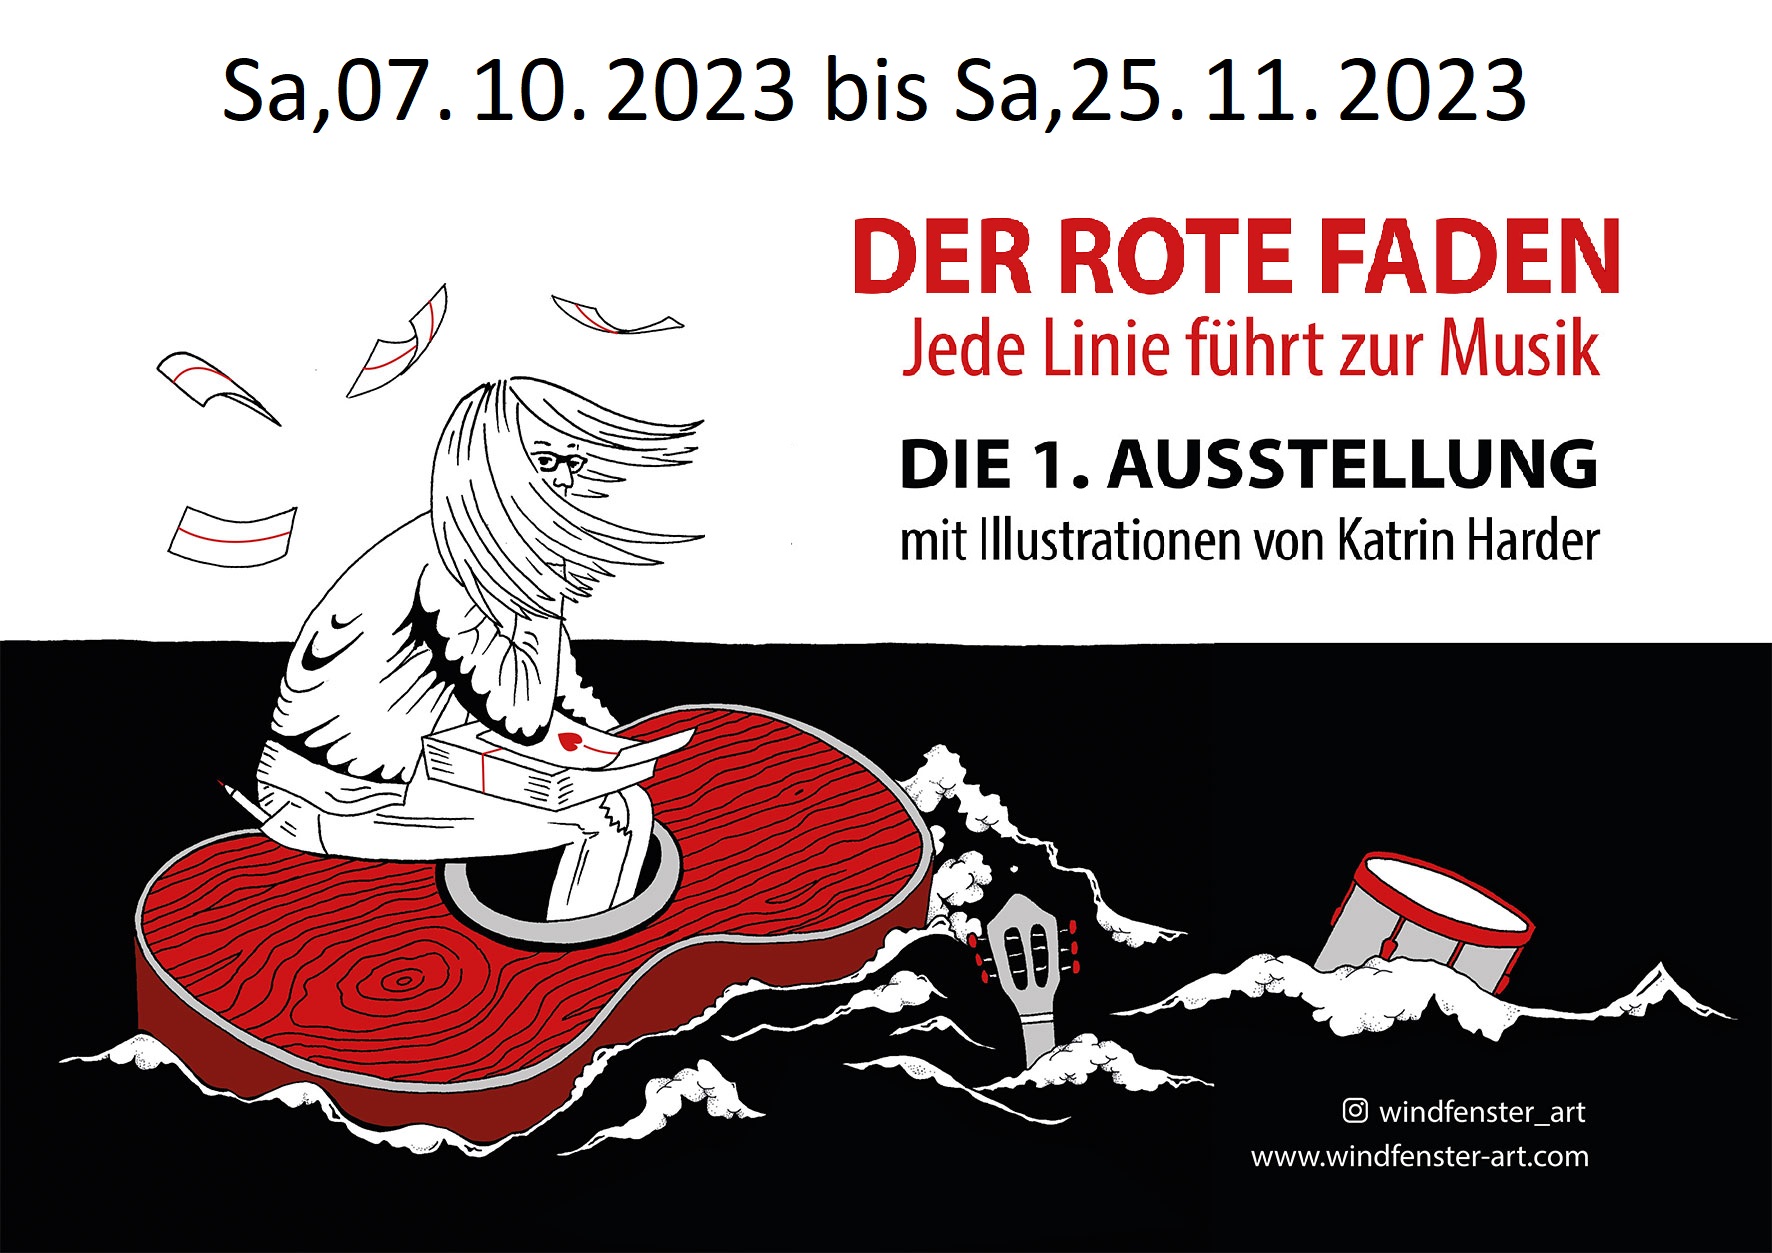 Der Rote Faden – Jede Linie führt zur Musik (7. Oktober @ 08:00 - 25. November @ 17:00): “DER ROTE FADEN – Jede Linie führt zur Musik” – so lau­tet der Name der Aus­stel­lung von Kat­rin Har­der, der nicht nur farb­lich, son­dern auch the­ma­tisch ihre gesam­ten Wer­ke durchzieht. … <a href="https://www.bauernladen-mv.de/">Weiterlesen</a>